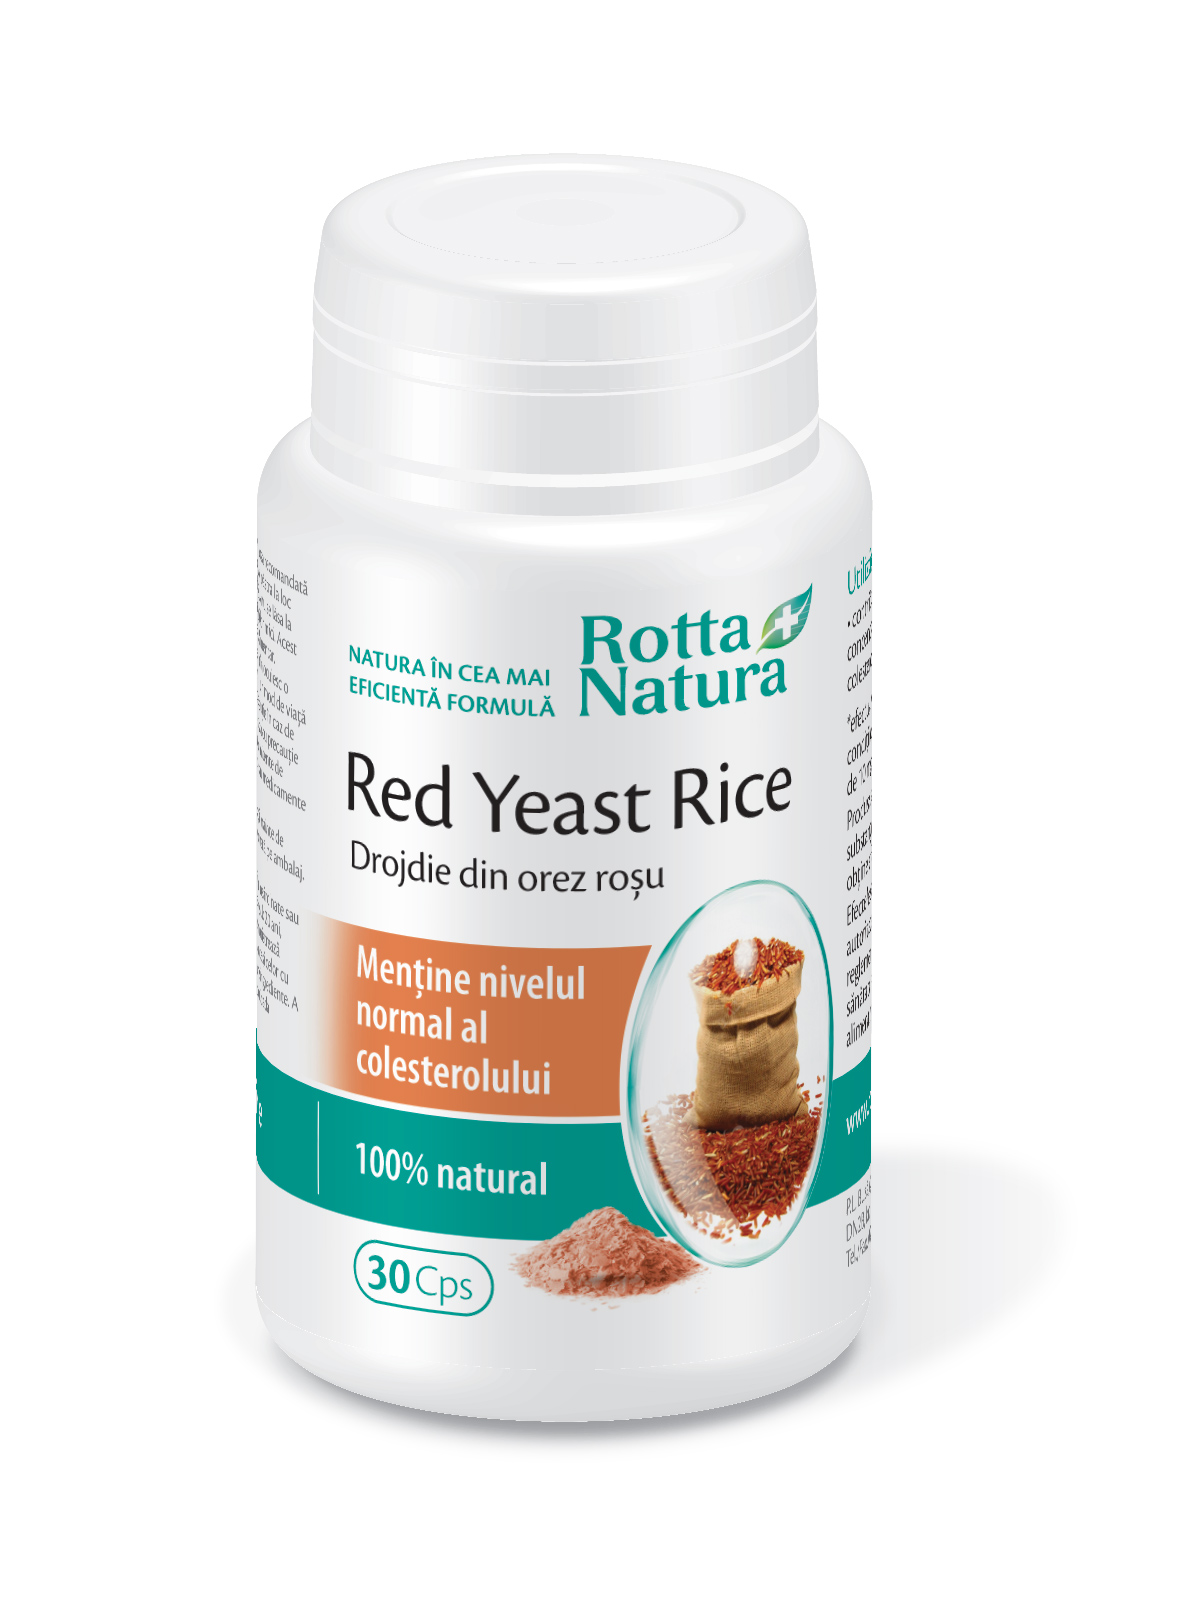 Anticolesterol - Red Yeast Rice 635, 30 capsule, Rotta Natura, sinapis.ro